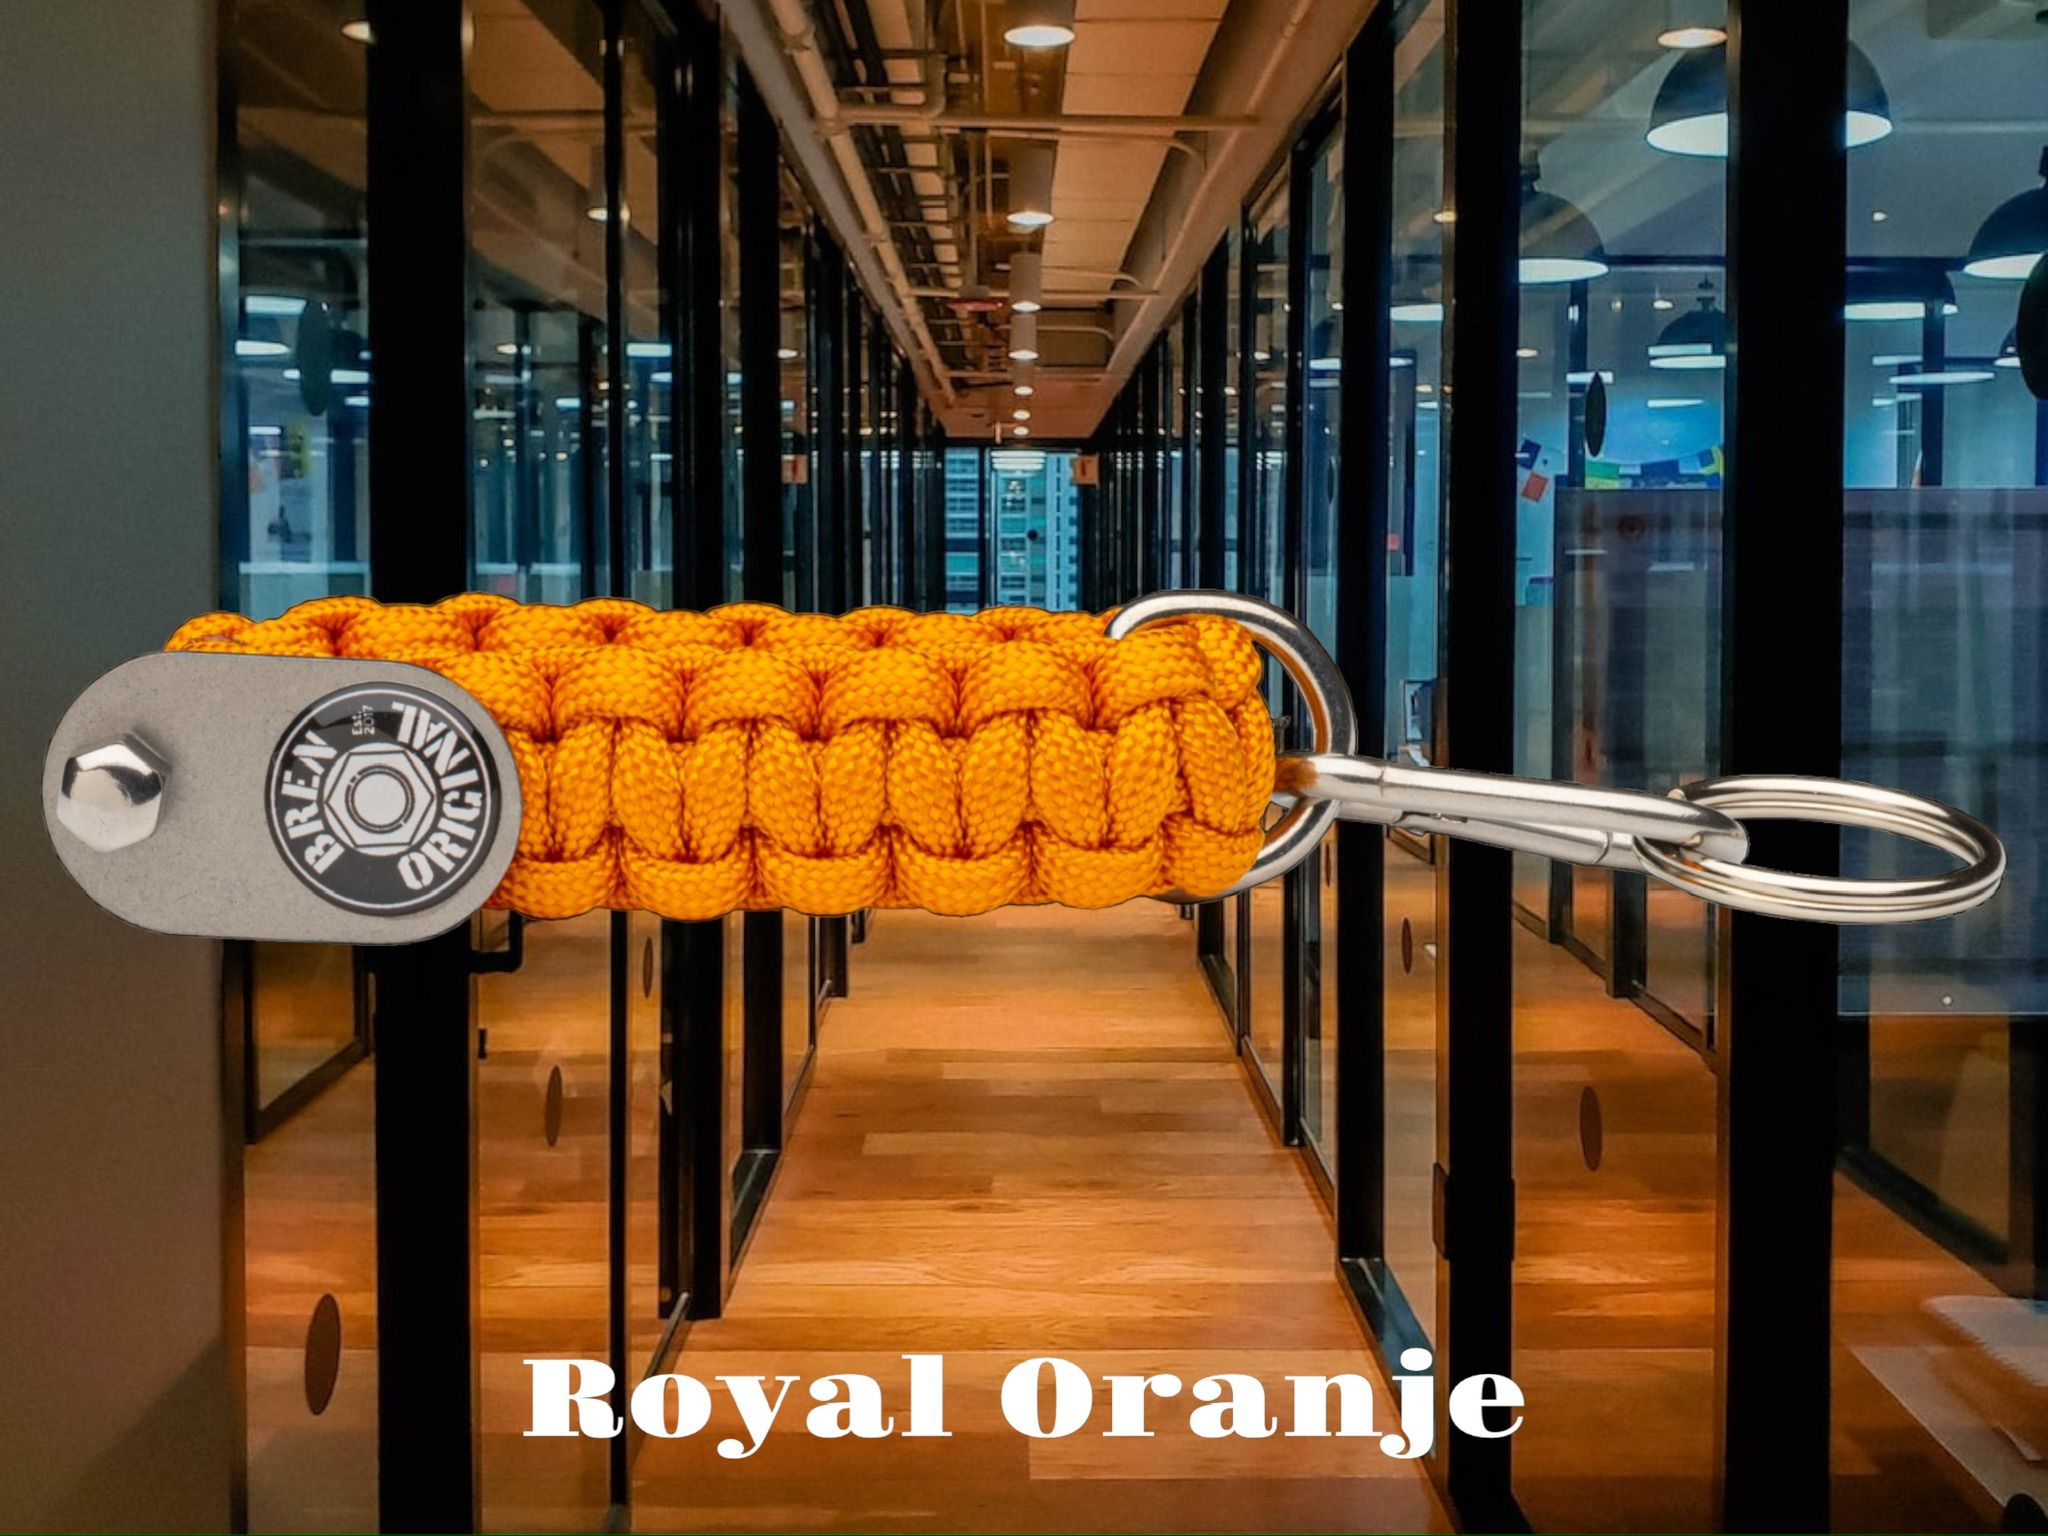 Royal Oranje